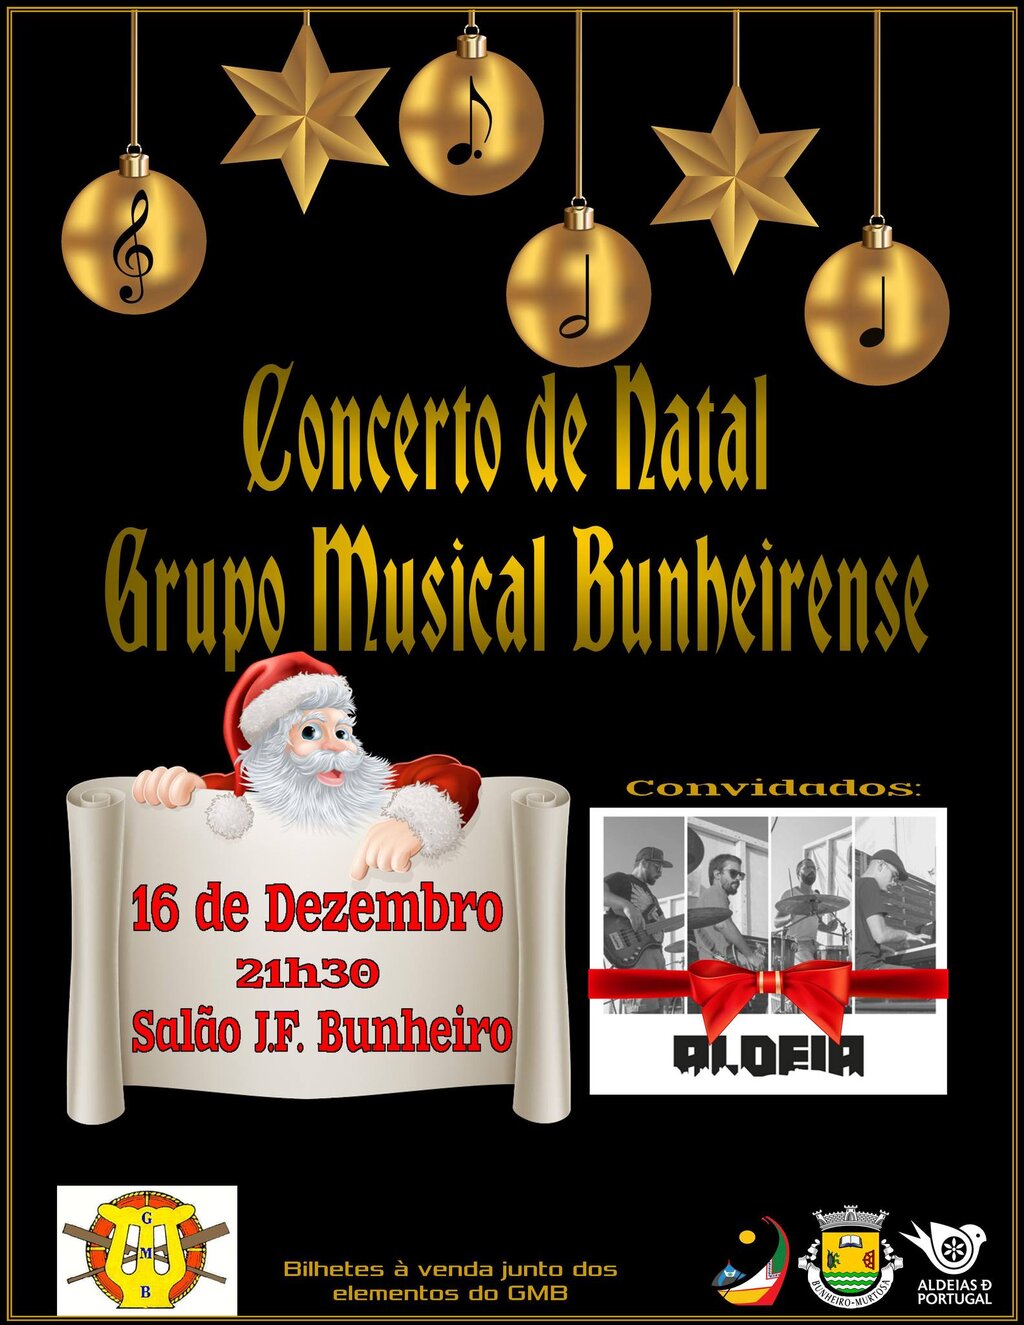 Concerto de Natal do Grupo Musical Bunheirense